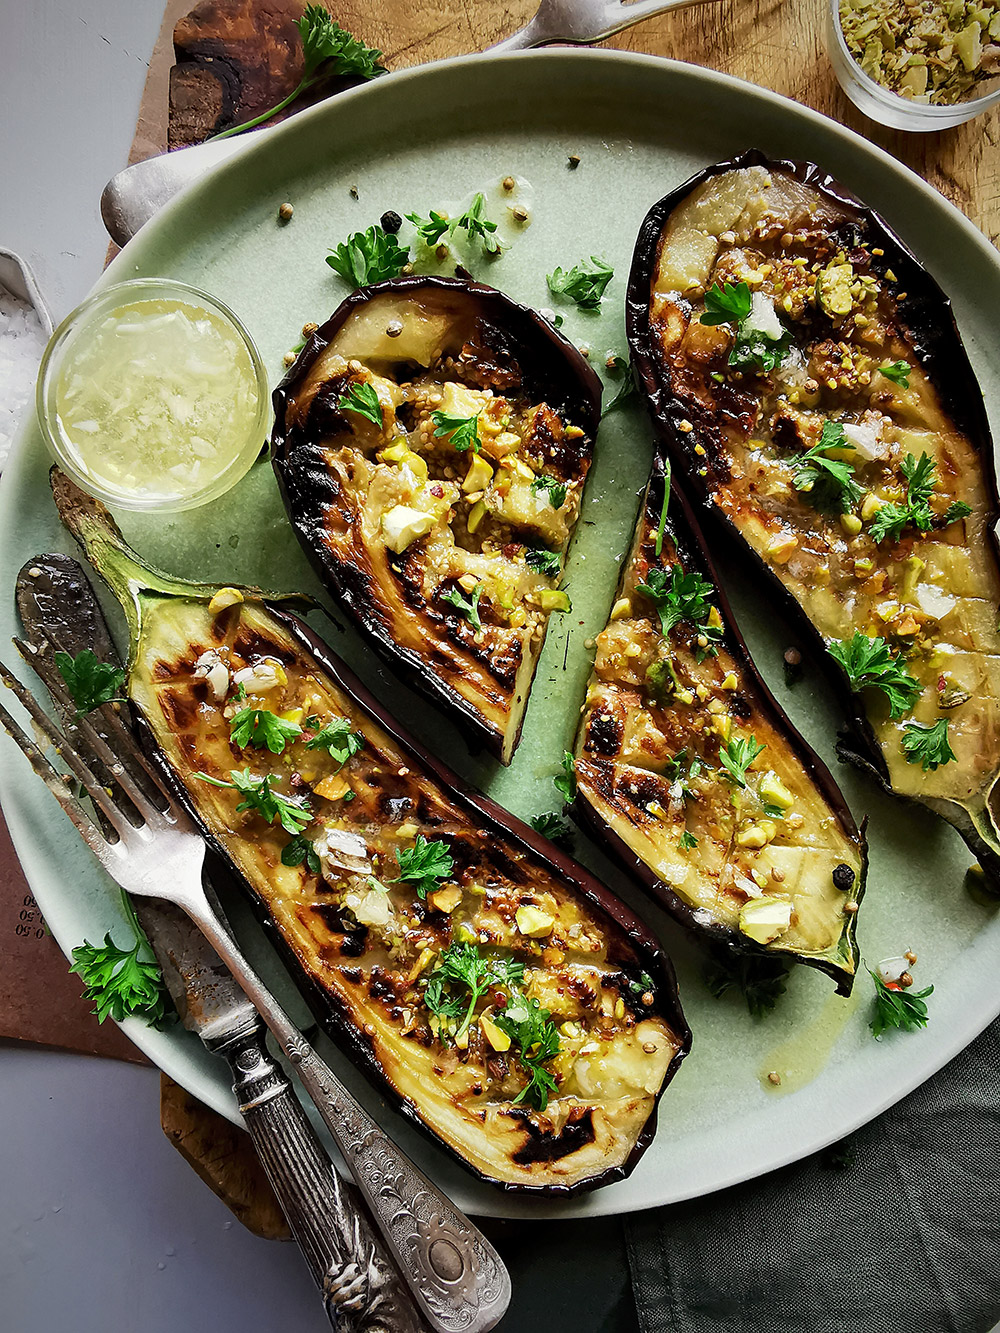 Summer eggplants